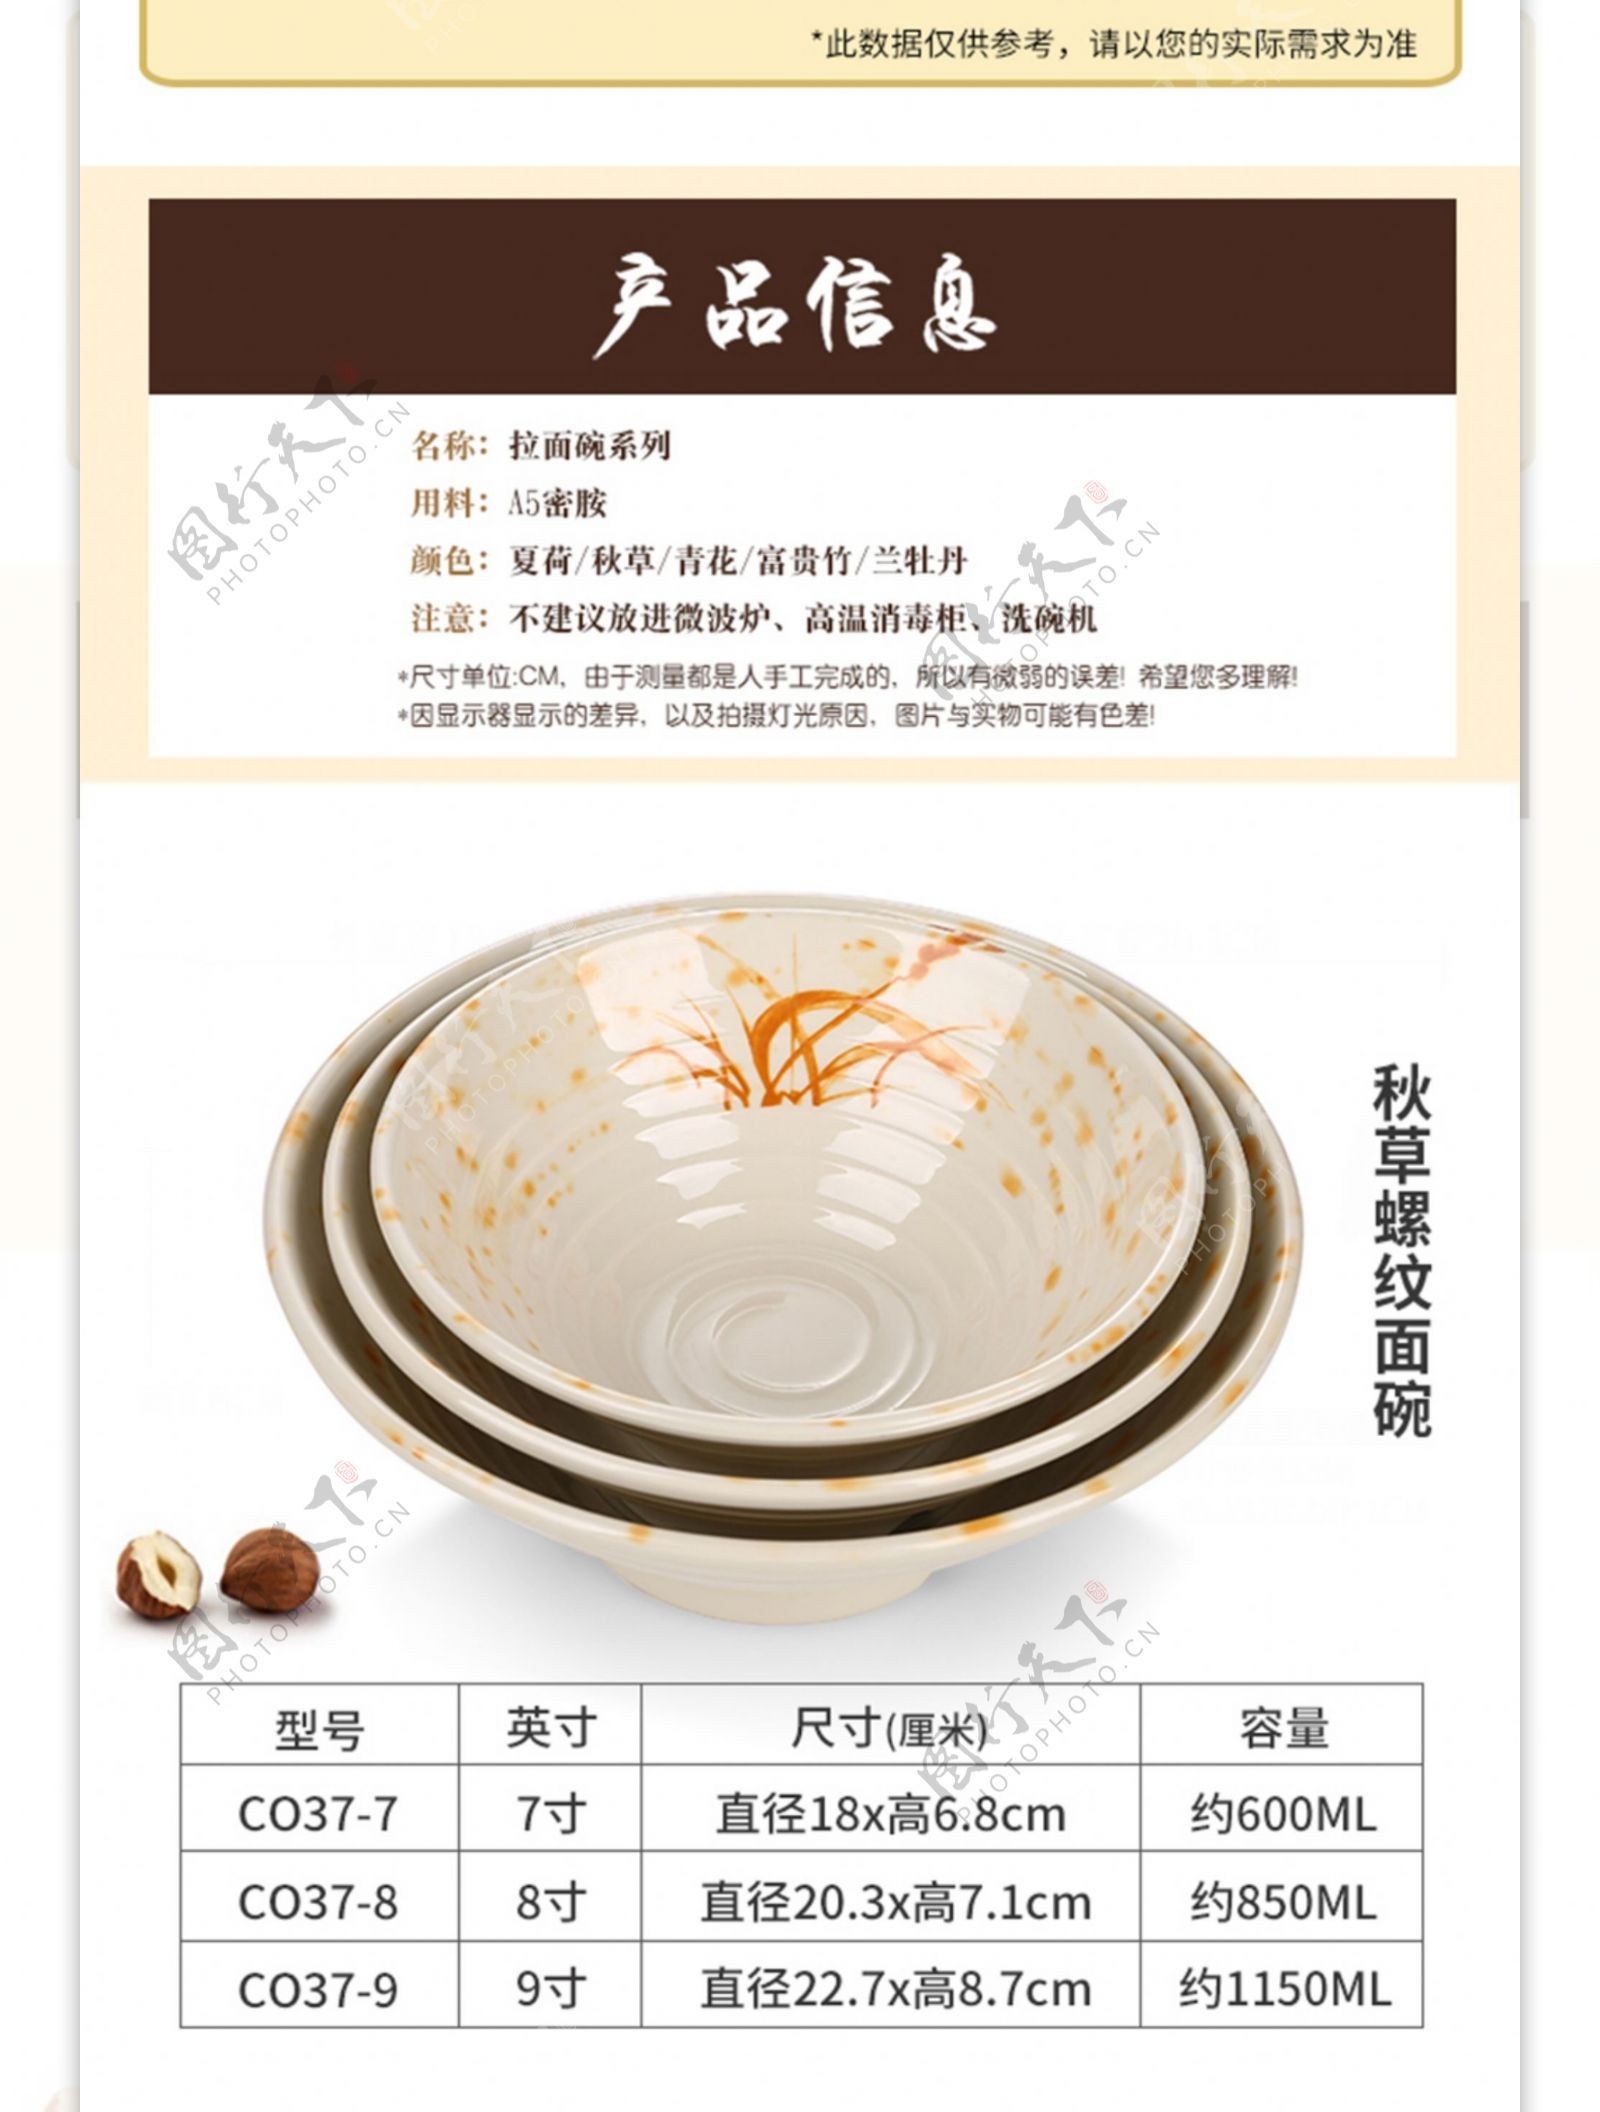 电商淘宝古朴典雅中国风面碗日用餐具详情页